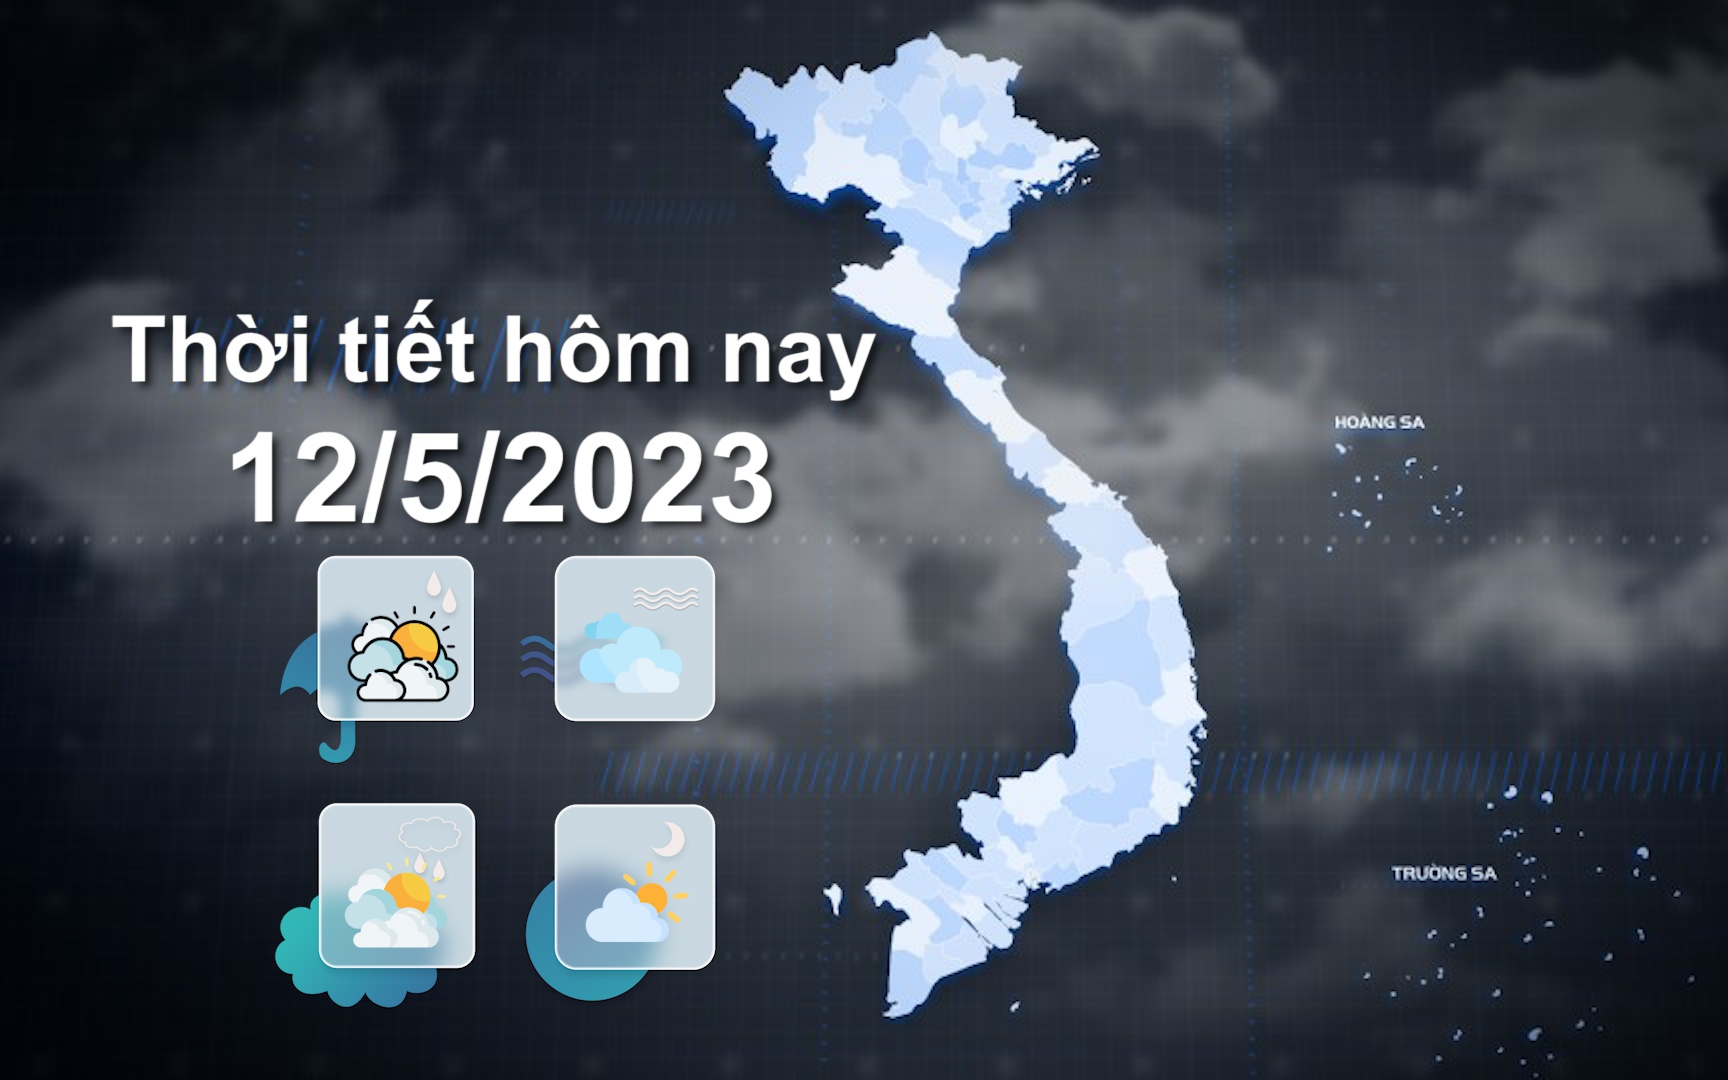 Thời tiết hôm nay 12/5/2023: Đông Bắc Bộ, Bắc Trung Bộ có mưa to đến rất to